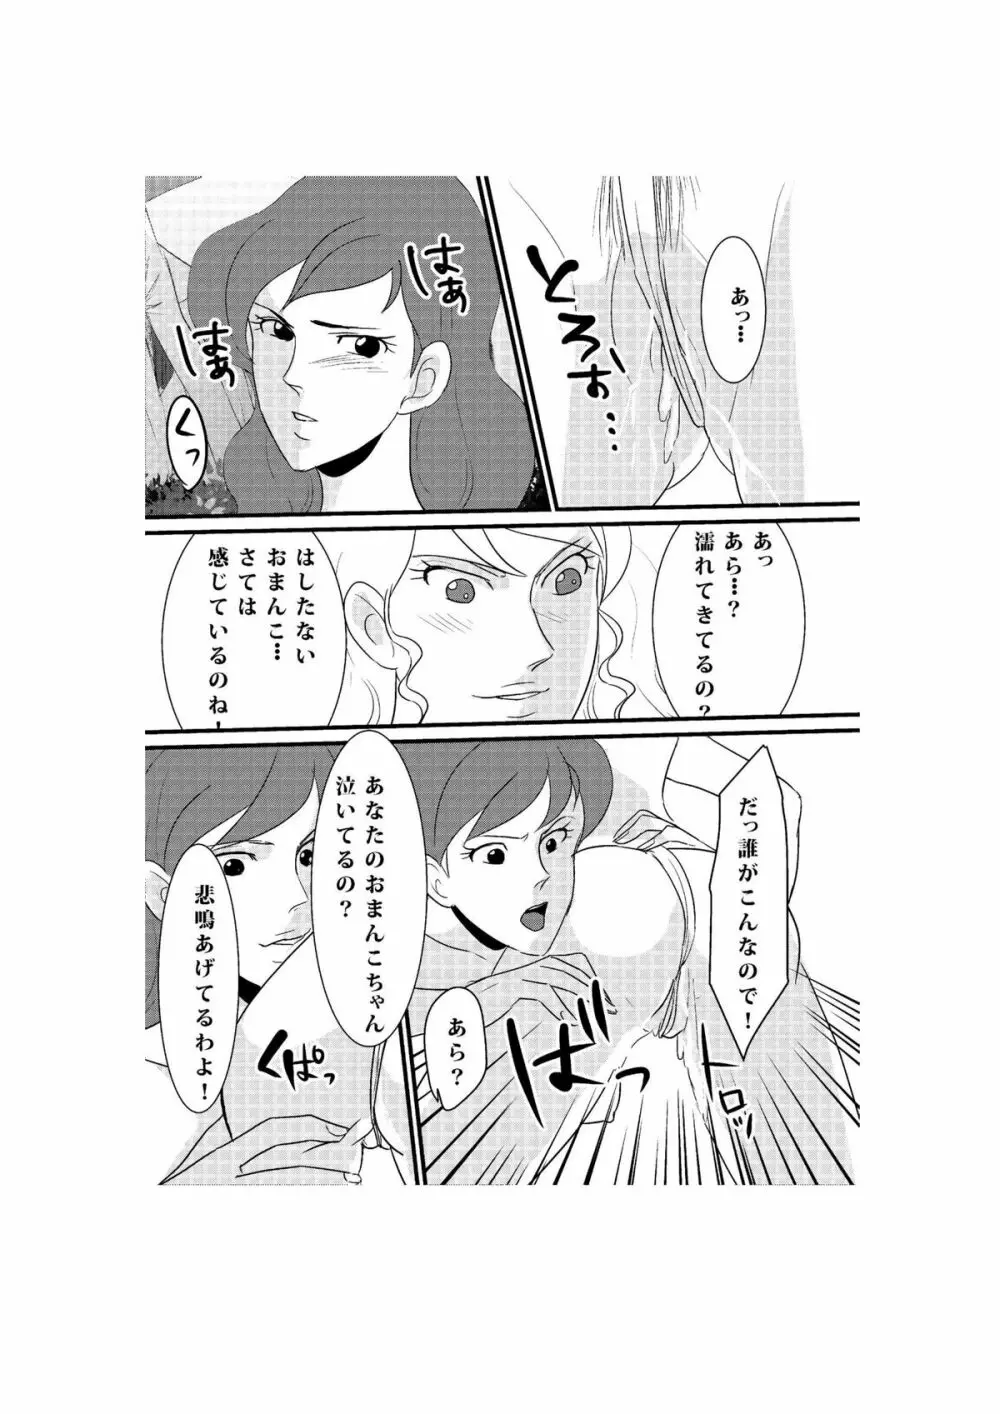 Fushi no Kyouten Ureta Onna no Tatakai - Fujiko VS Emmanuelle - page15